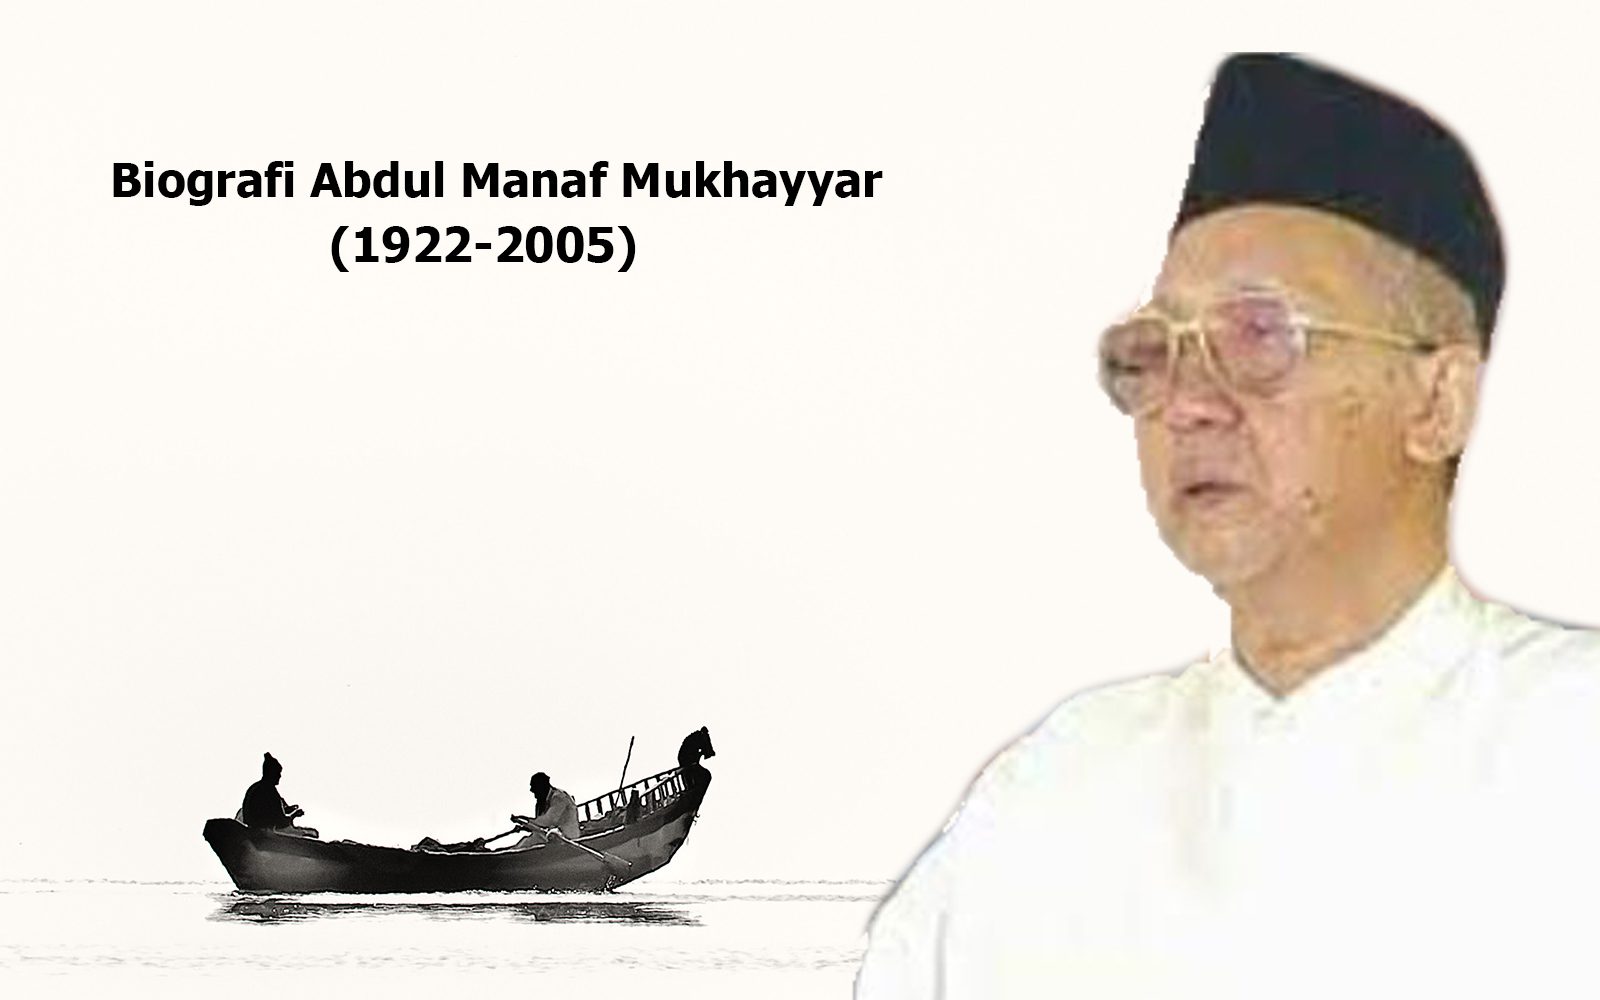 Biografi Abdul Manaf Mukhayyar (1922-2005), Pendiri Pondok Pesantren Pertama di Ibu Kota Jakarta